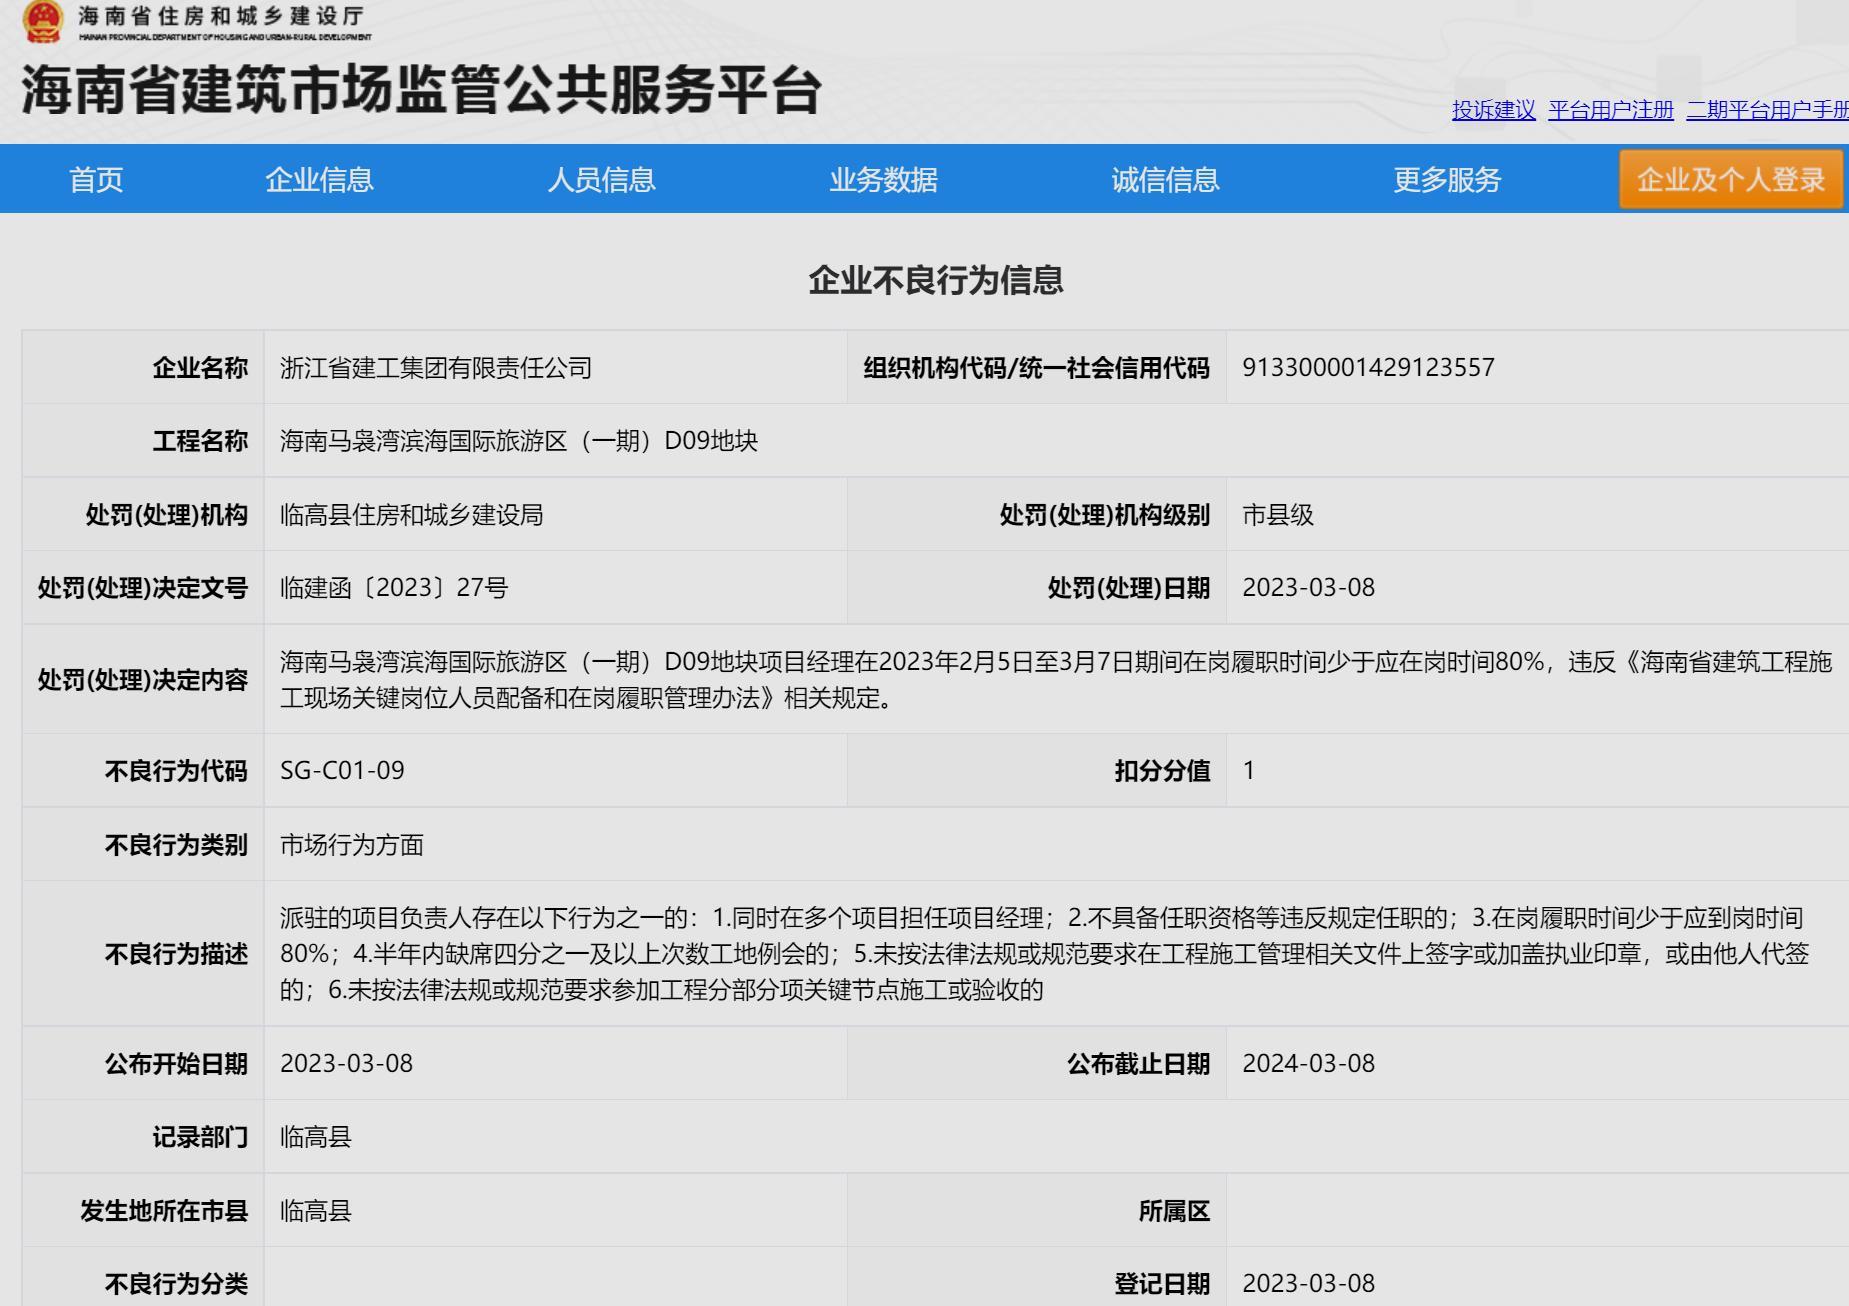 项目经理履职率低 浙江省建工集团有限责任公司被扣诚信分